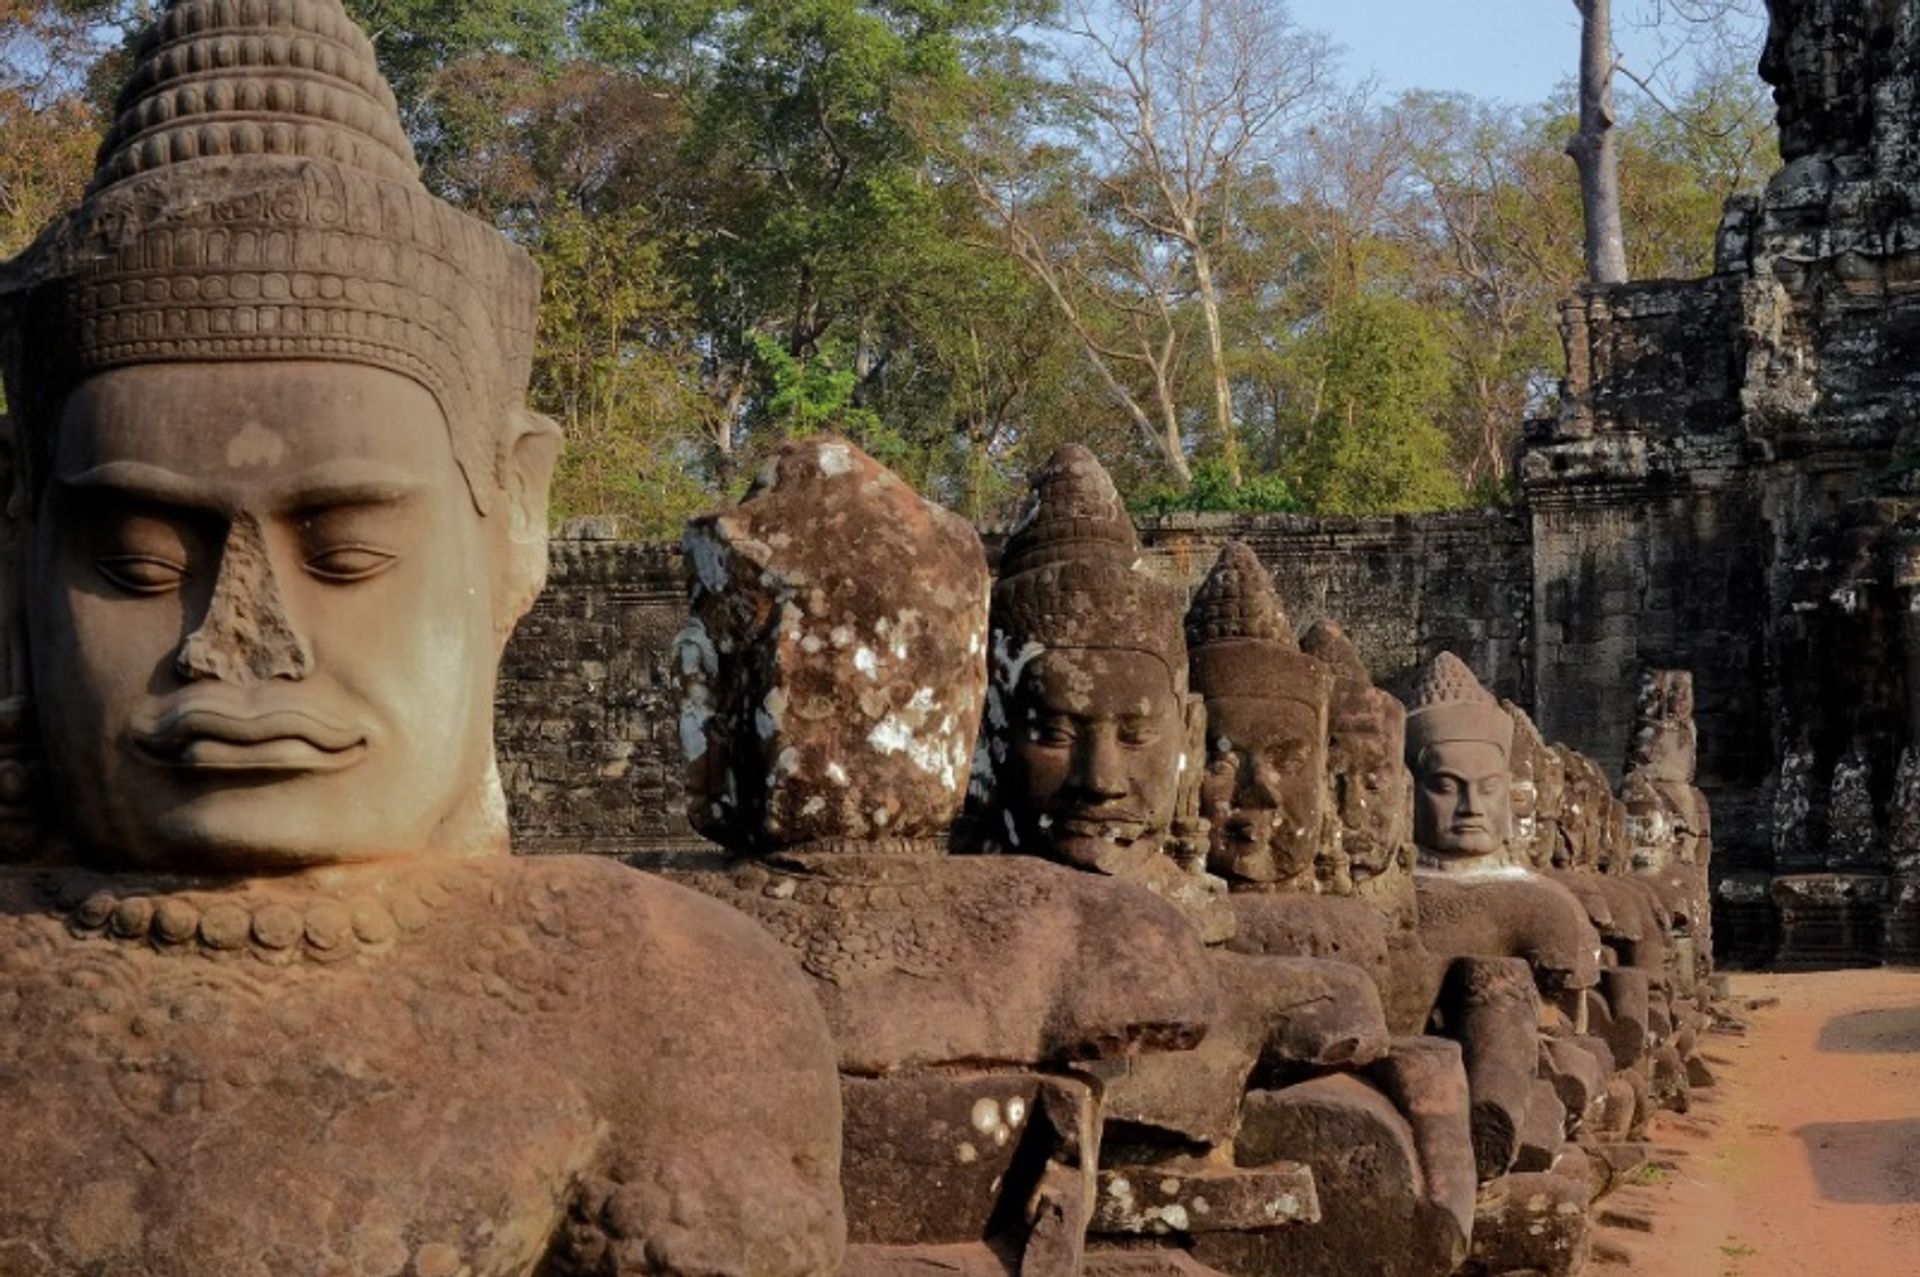 פסלי אלילים על גשר אל השער הדרומי של אנגקור ת'ום, קמבודיה, שם רבים מהראשים הוחלפו בעותקים מכיוון שהמקורים נגנבו

צילום: צייטמסר